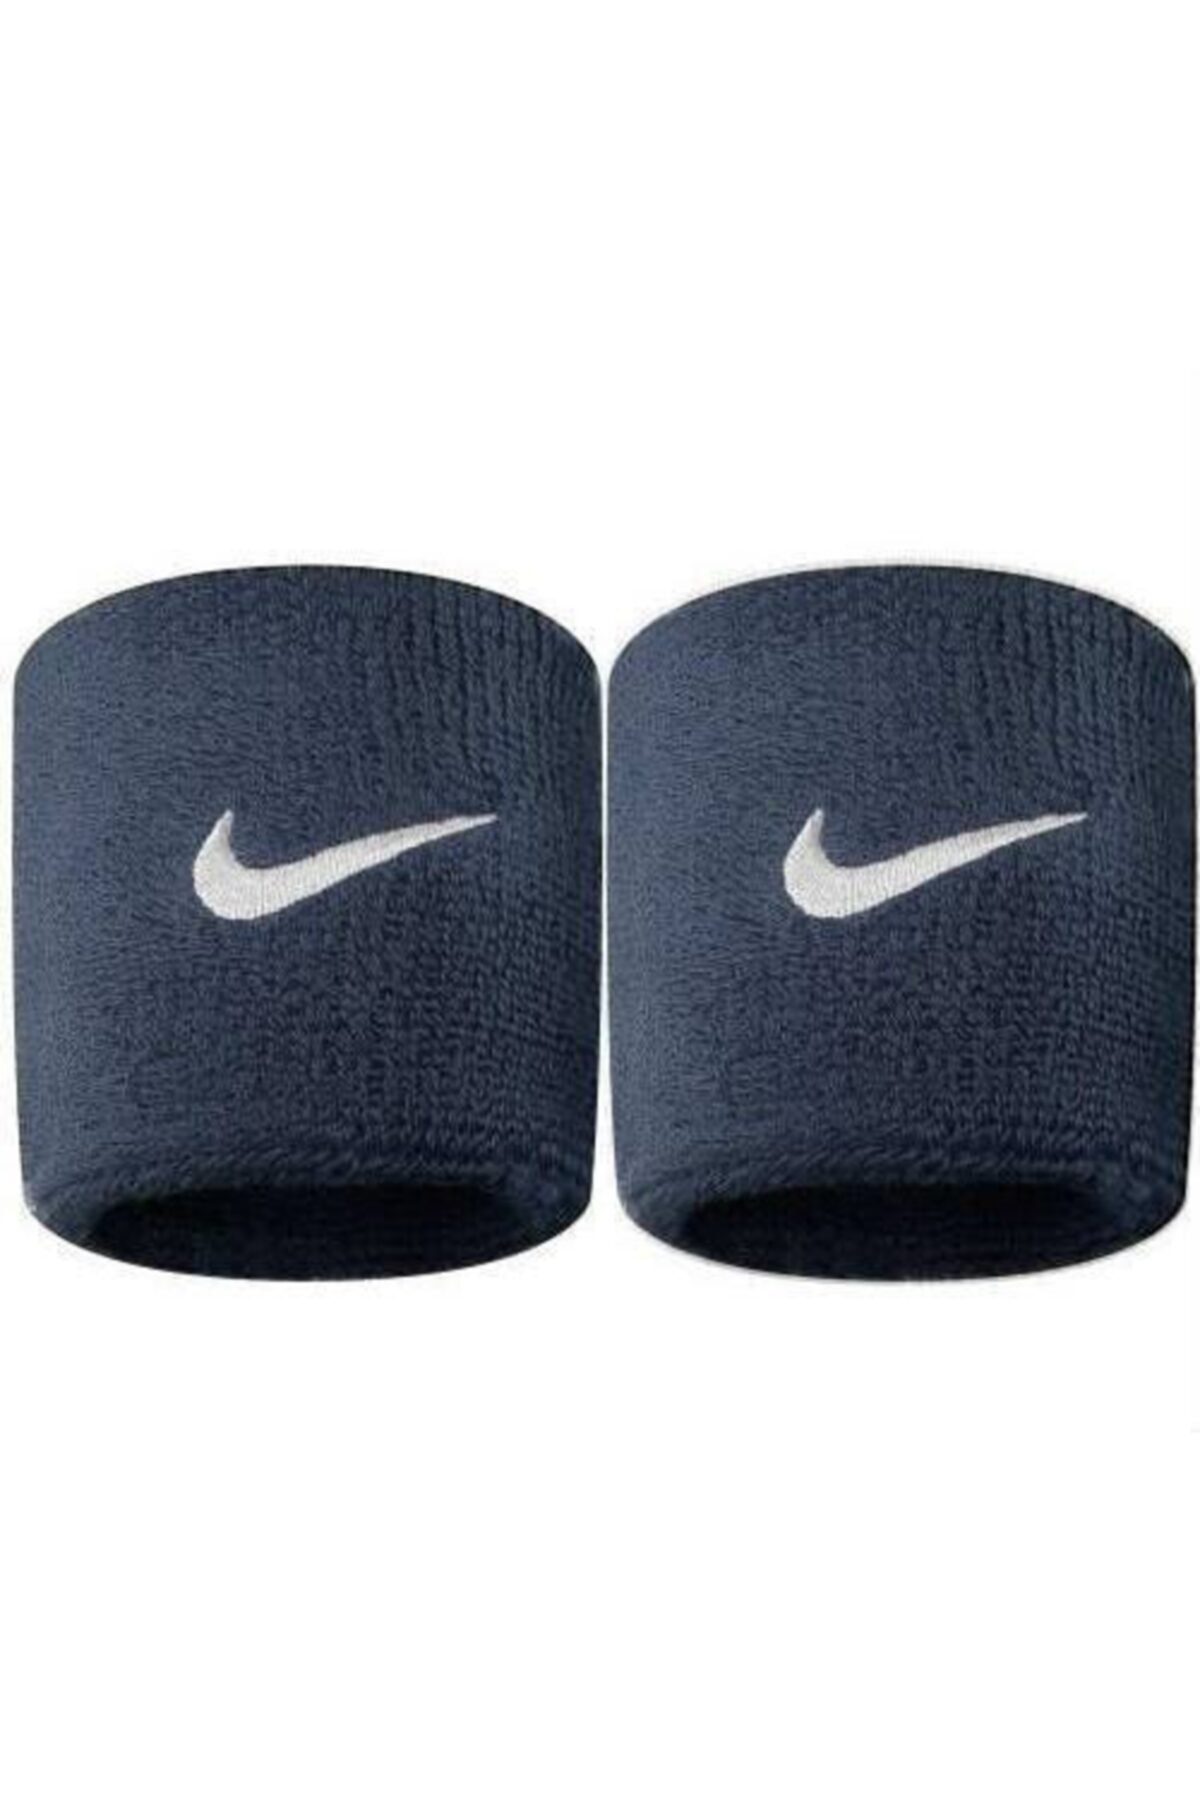 Nike Swoosh Wristbands Bileklik Havlu El Bilekliği Lacivert Renk